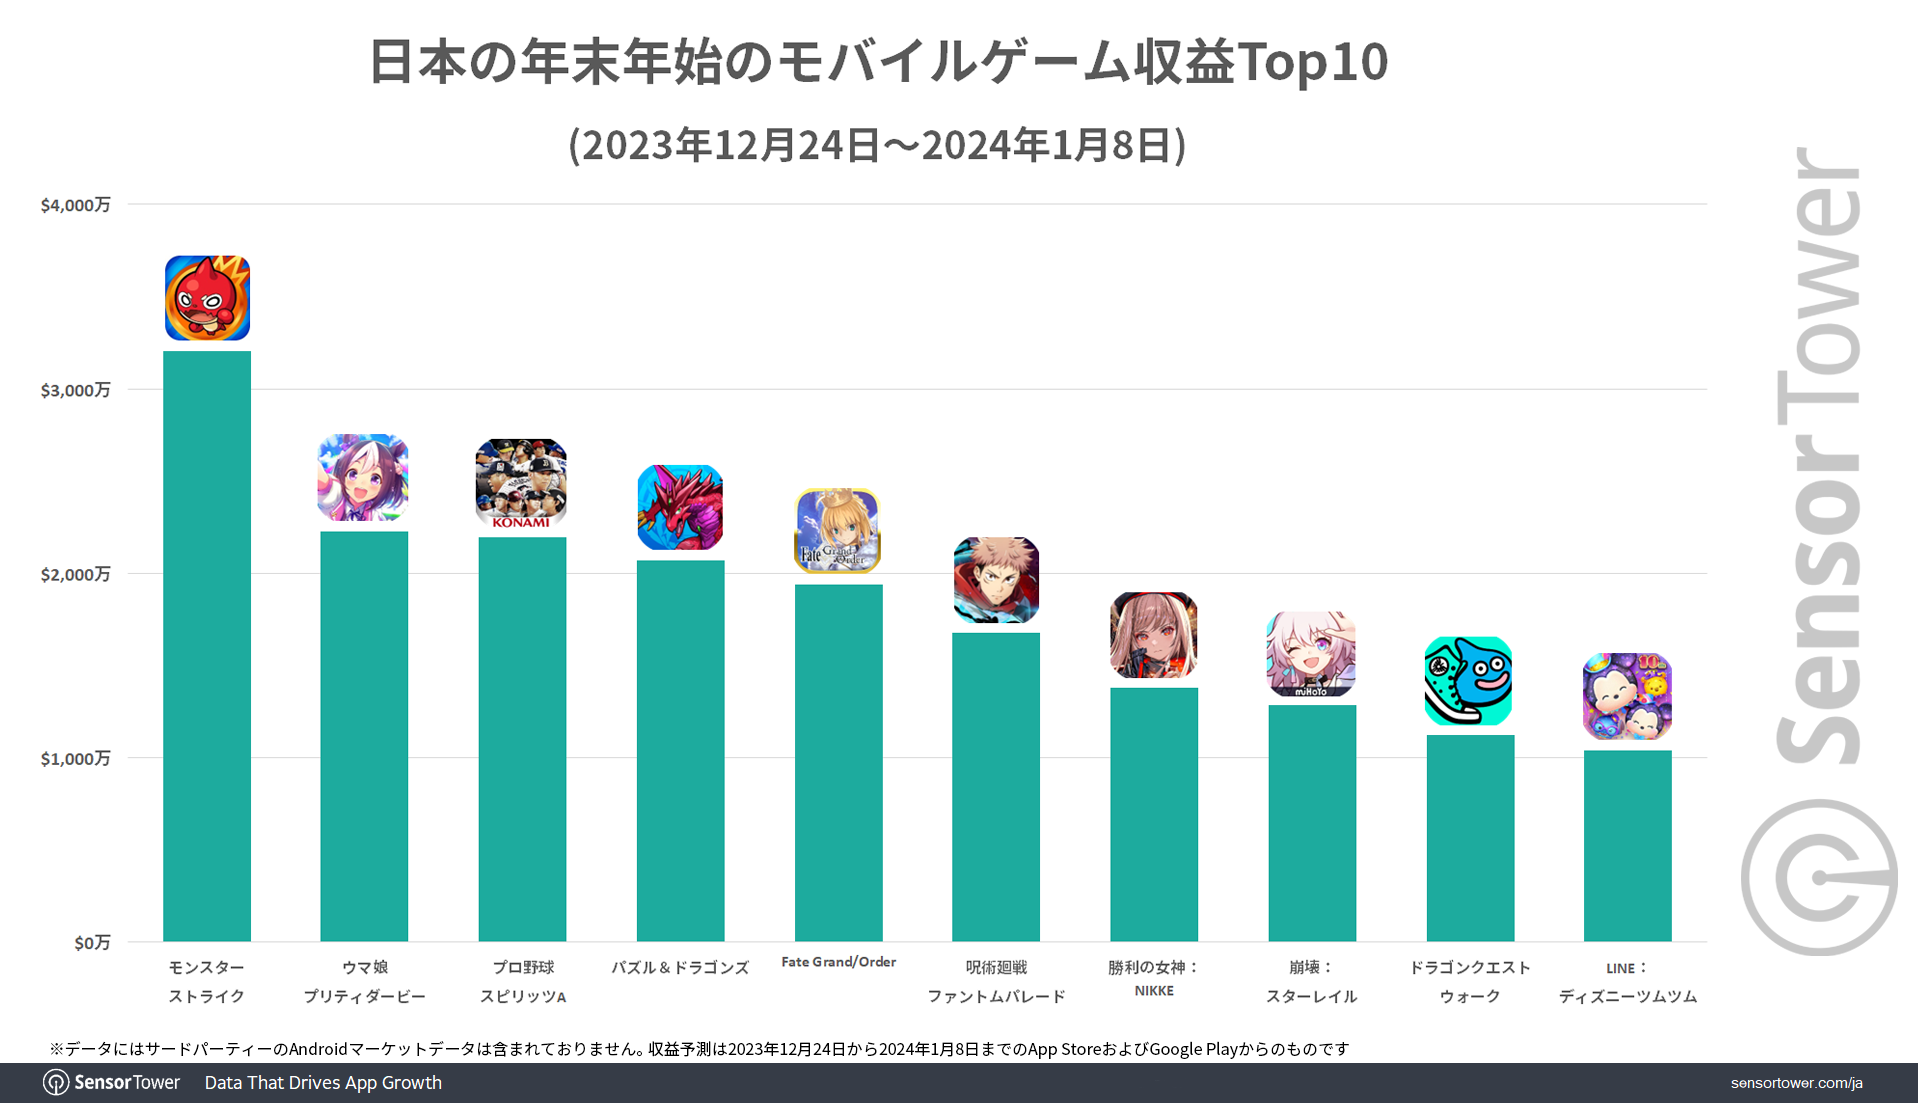 Revenue-Top10-Japan